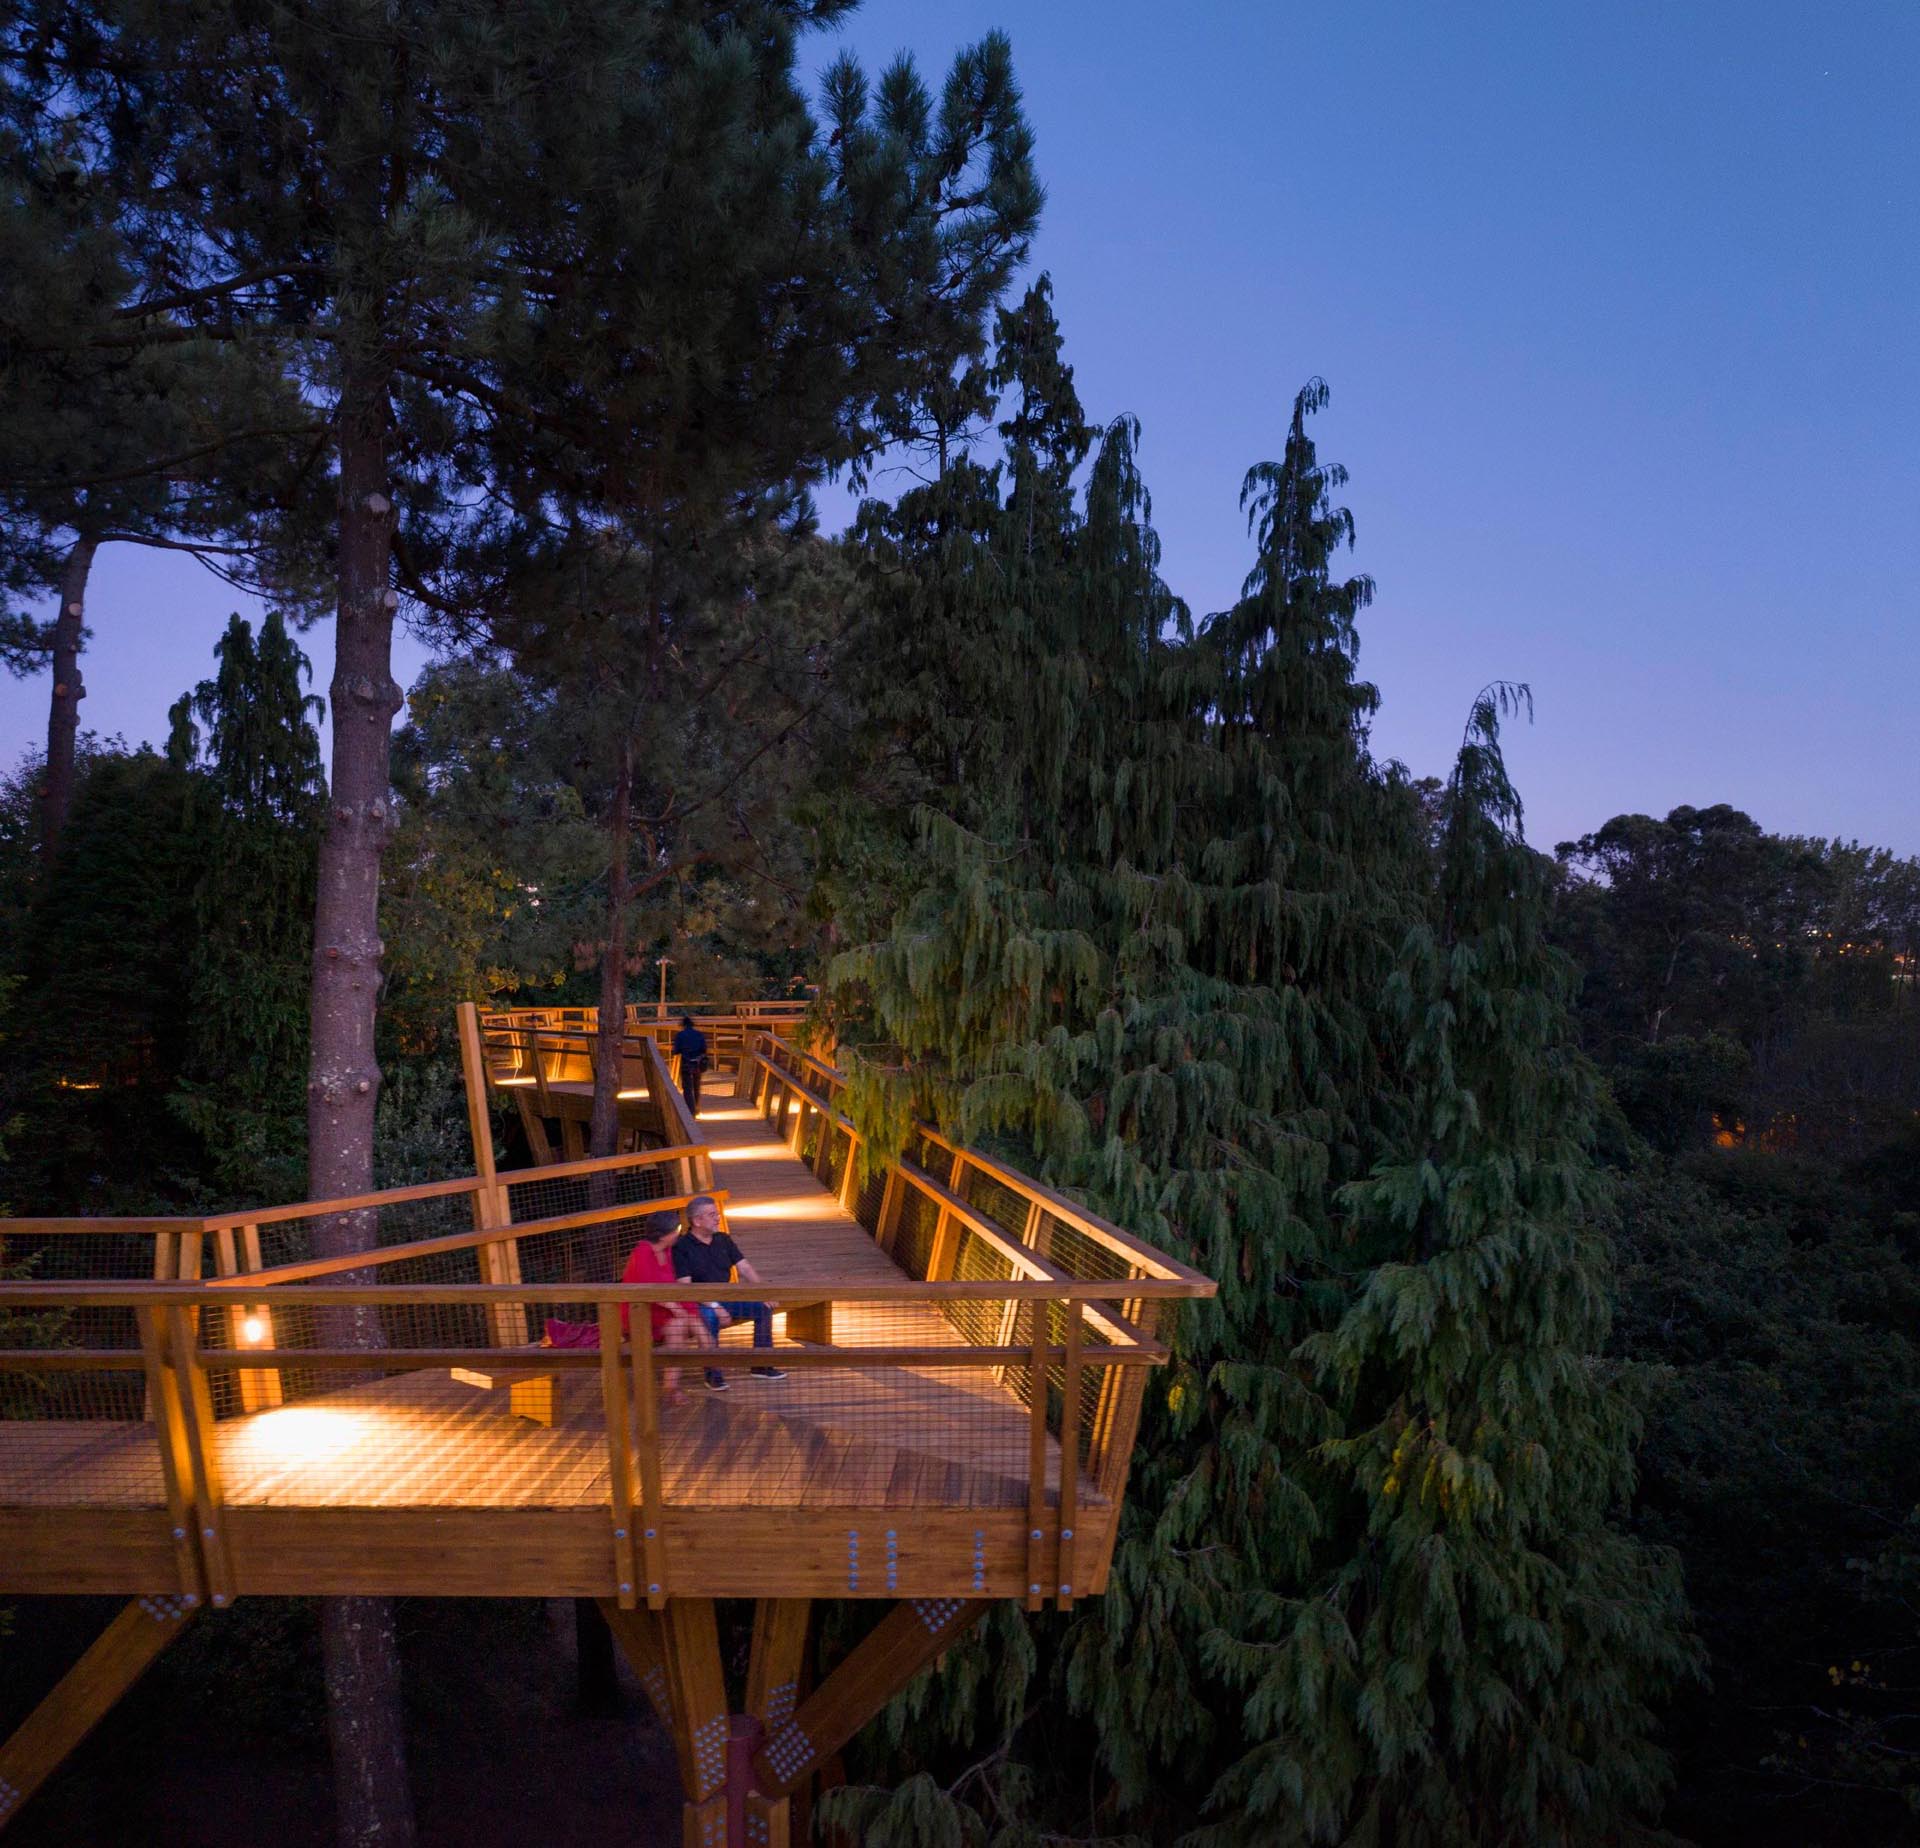 Прогулка по кронам деревьев в Португалии имеет освещение для ночных прогулок.